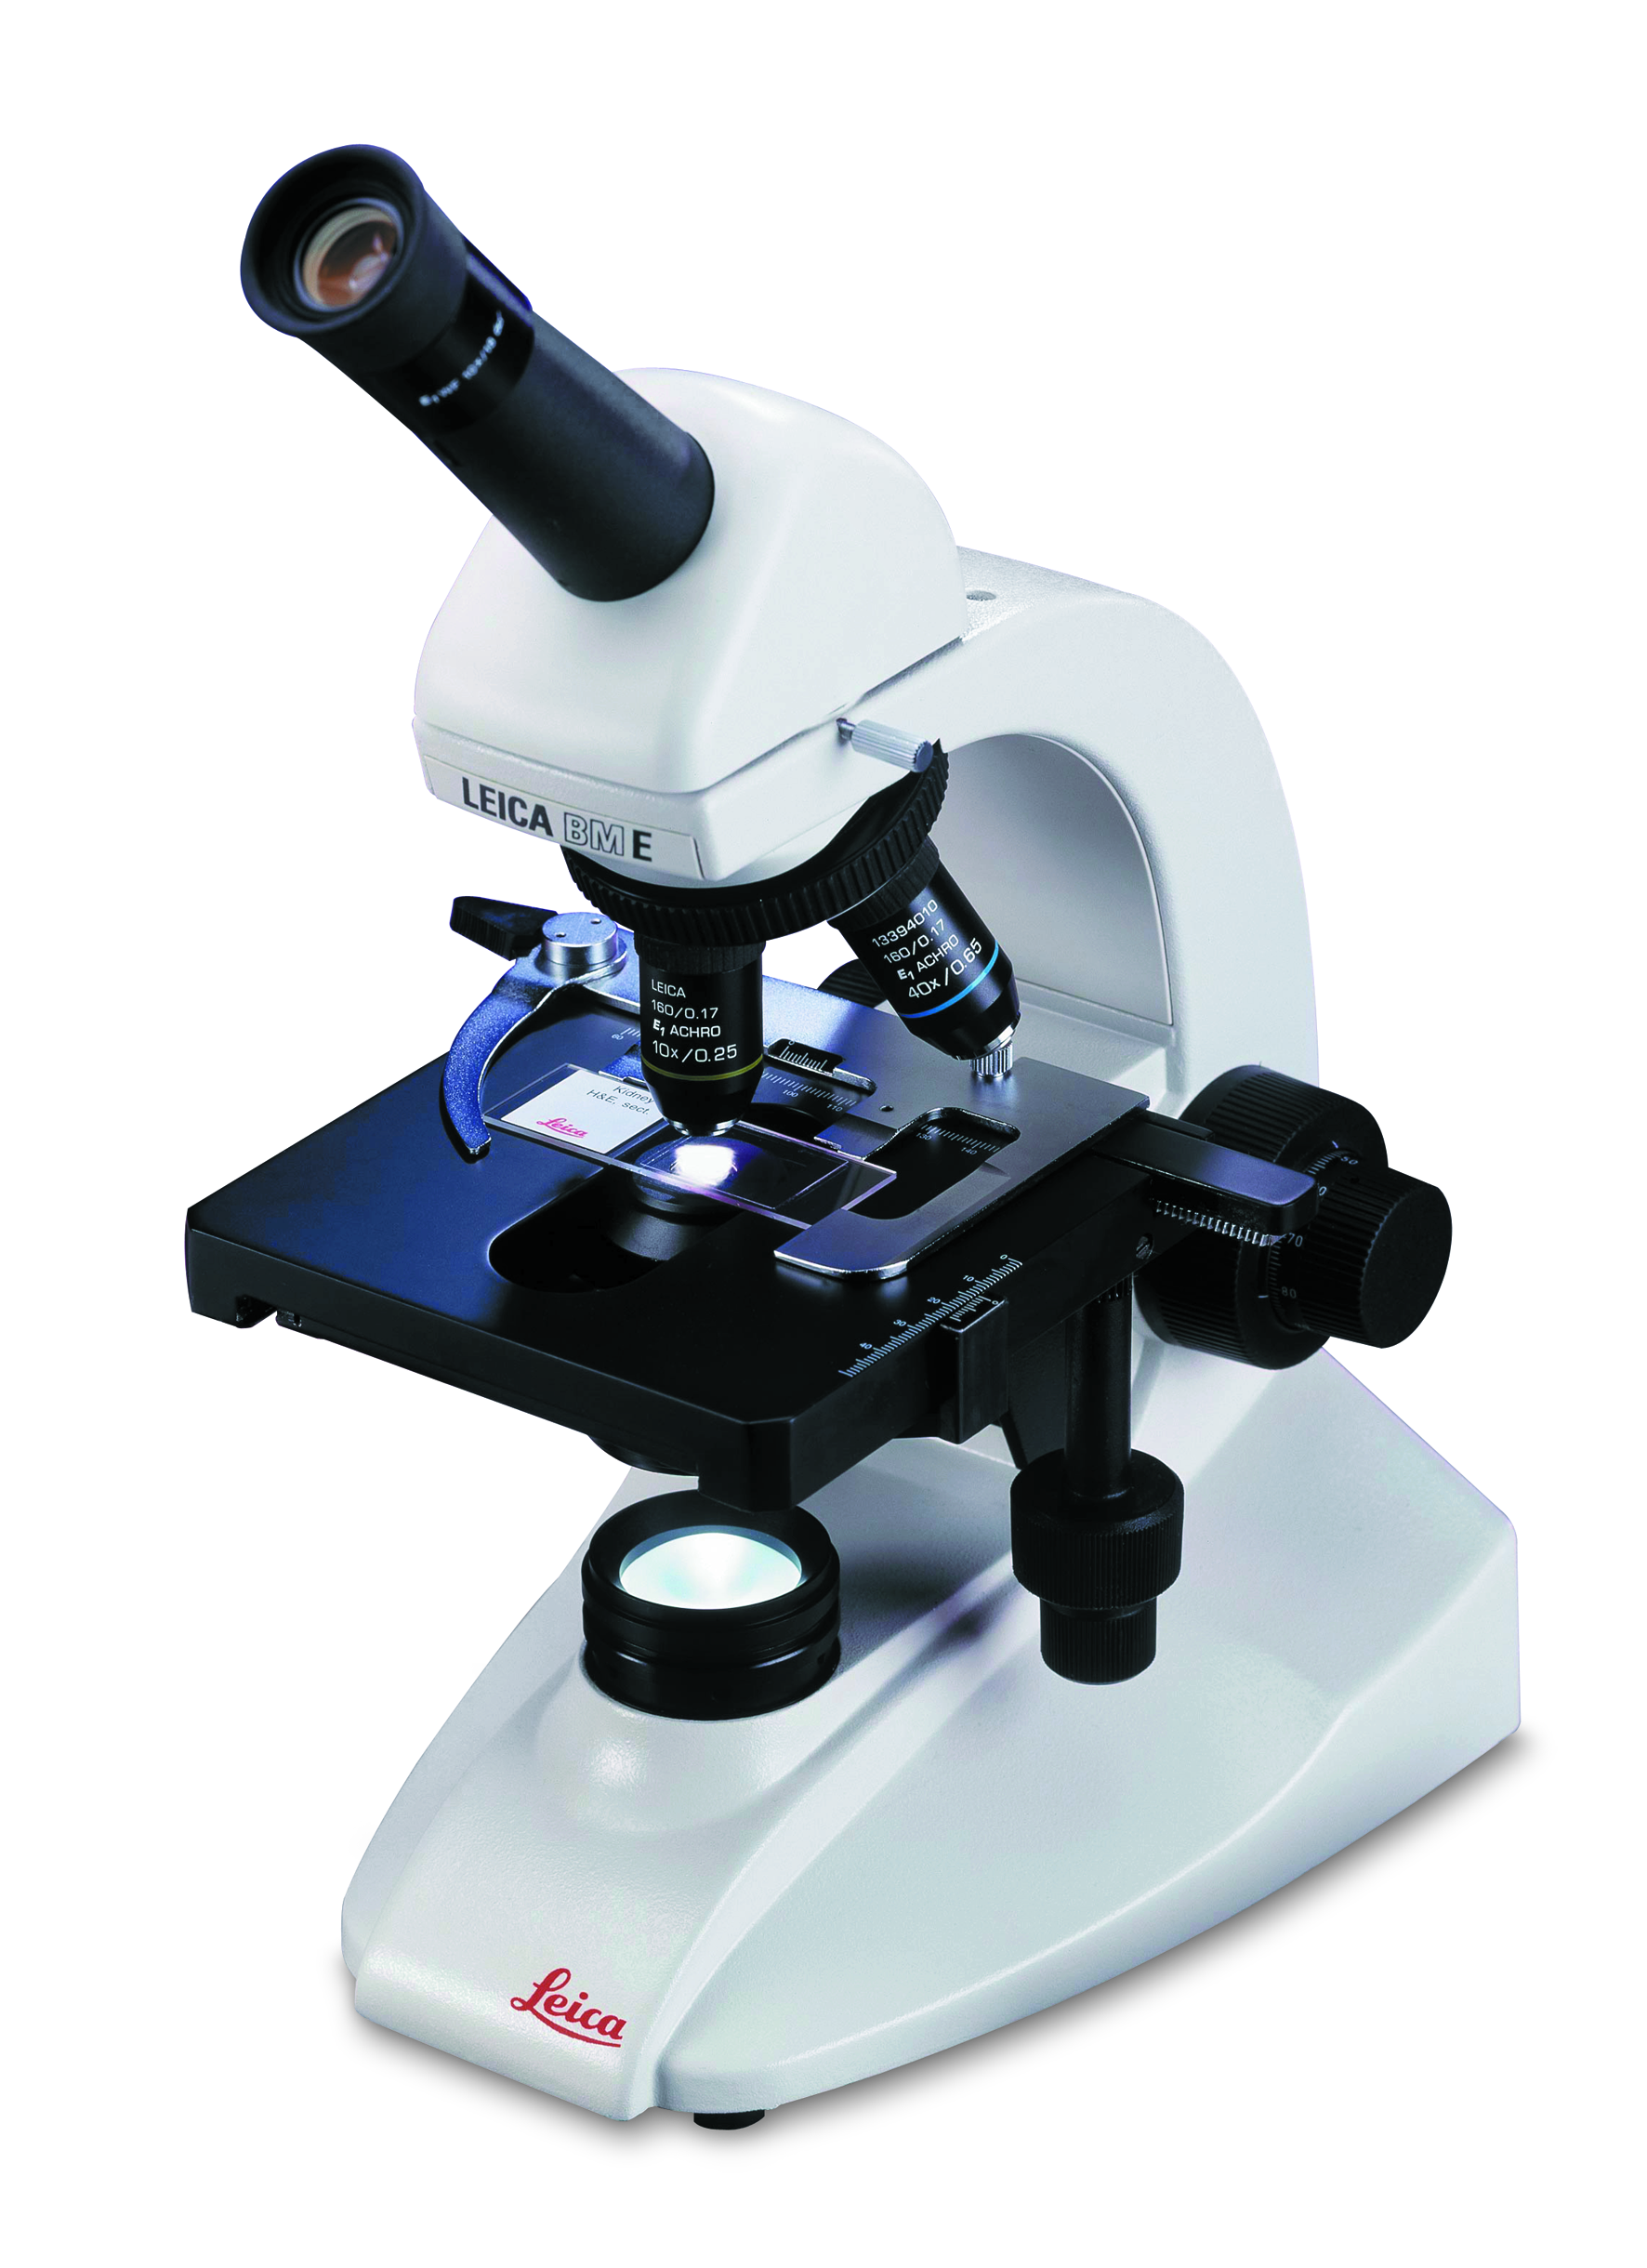 Ottiche di alta qualità e durabilità fanno di Leica BM E il microscopio didattico migliore della sua categoria.